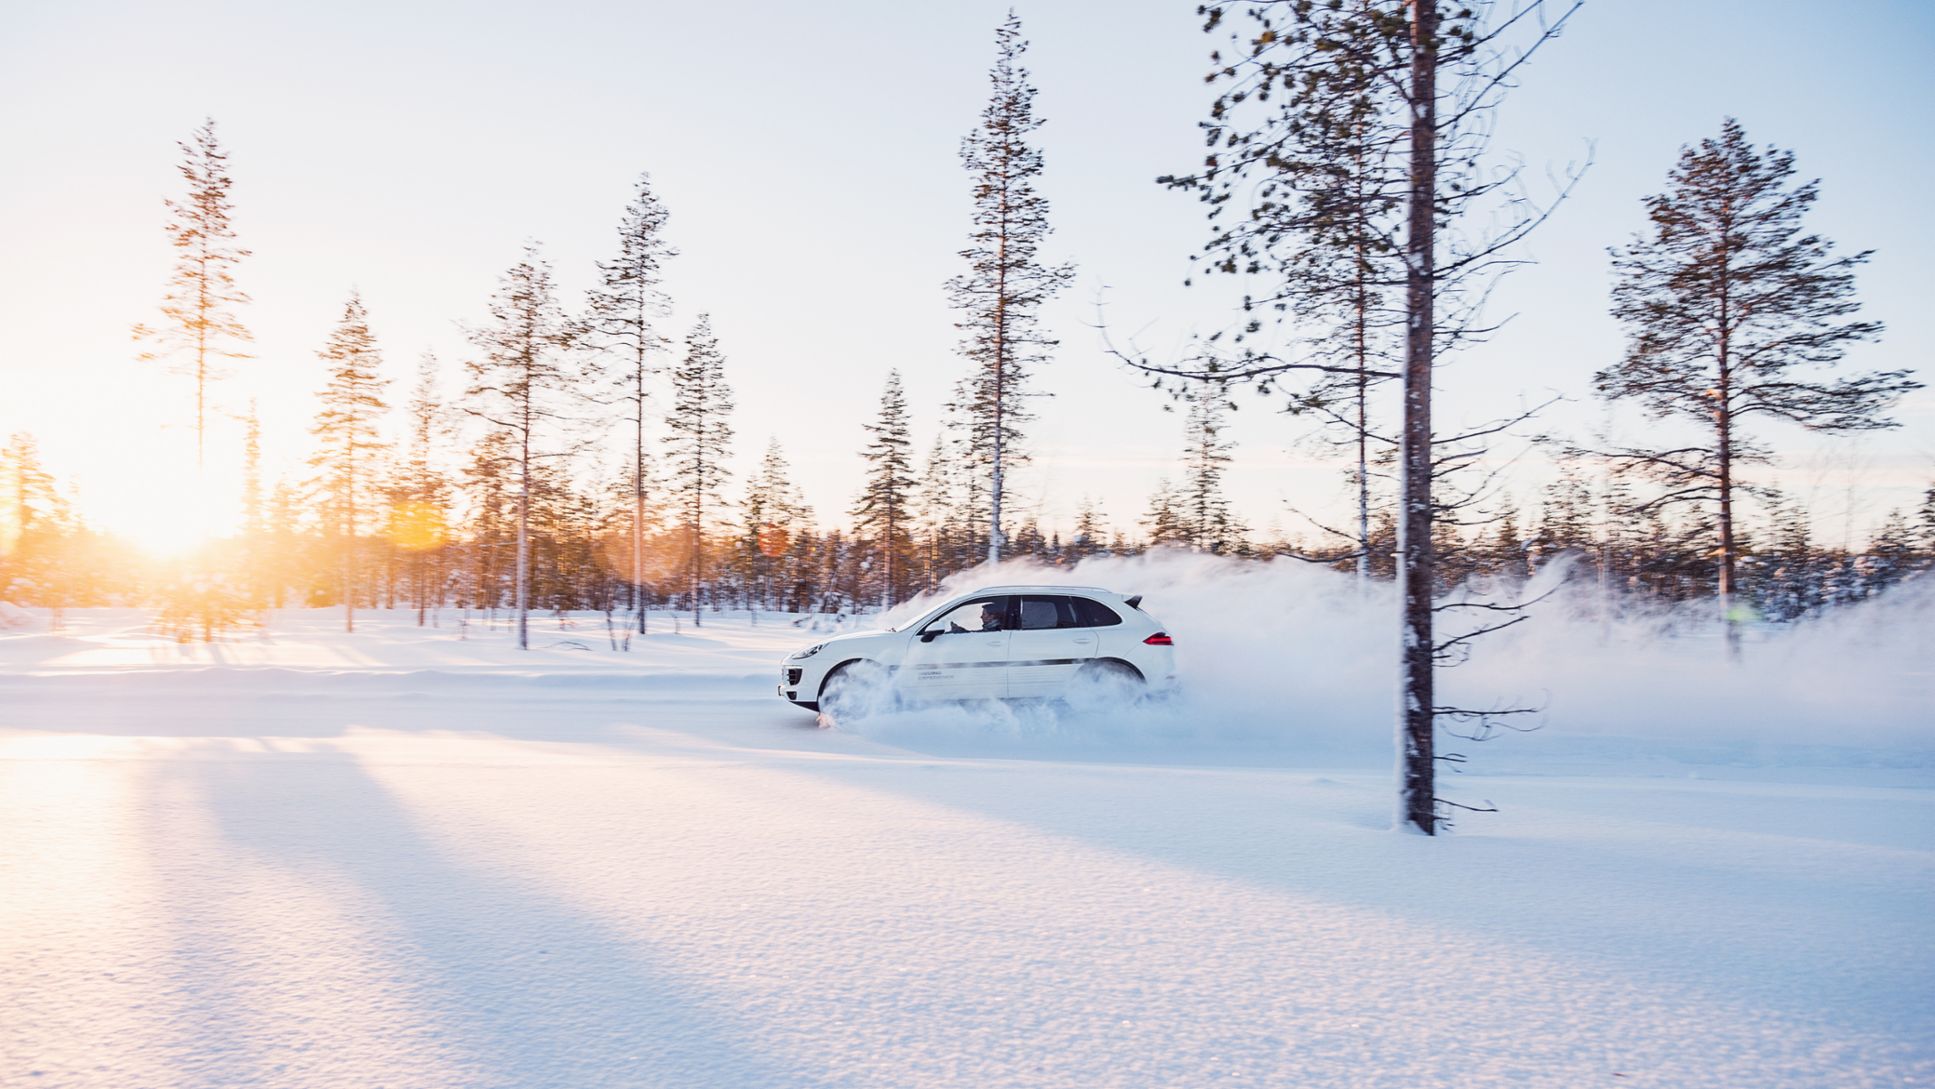 Cayenne S, Porsche Driving Experience Winter, Levi, Finnland, 2015, Porsche AG